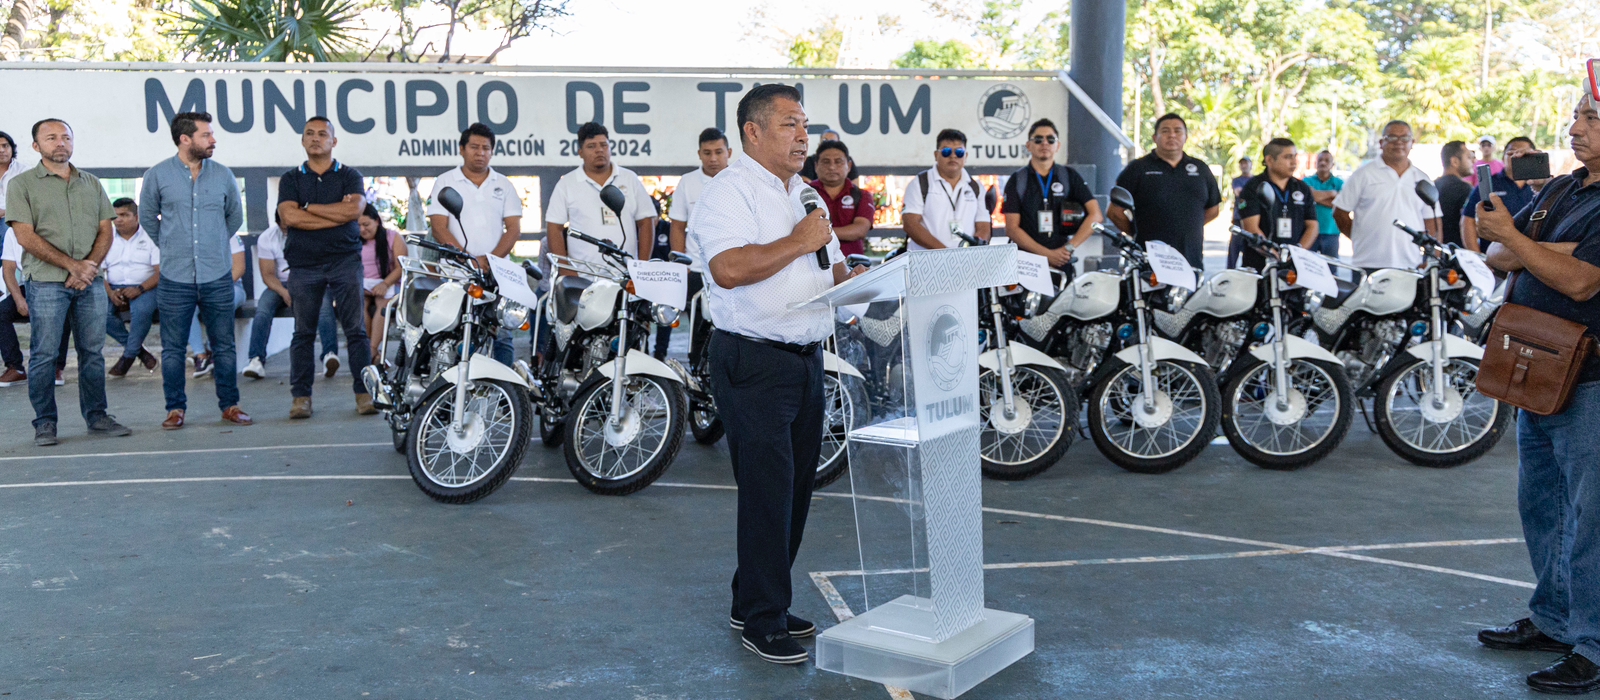 Equipa Marciano Dzul a 10 direcciones de su administración con motocicletas nuevas